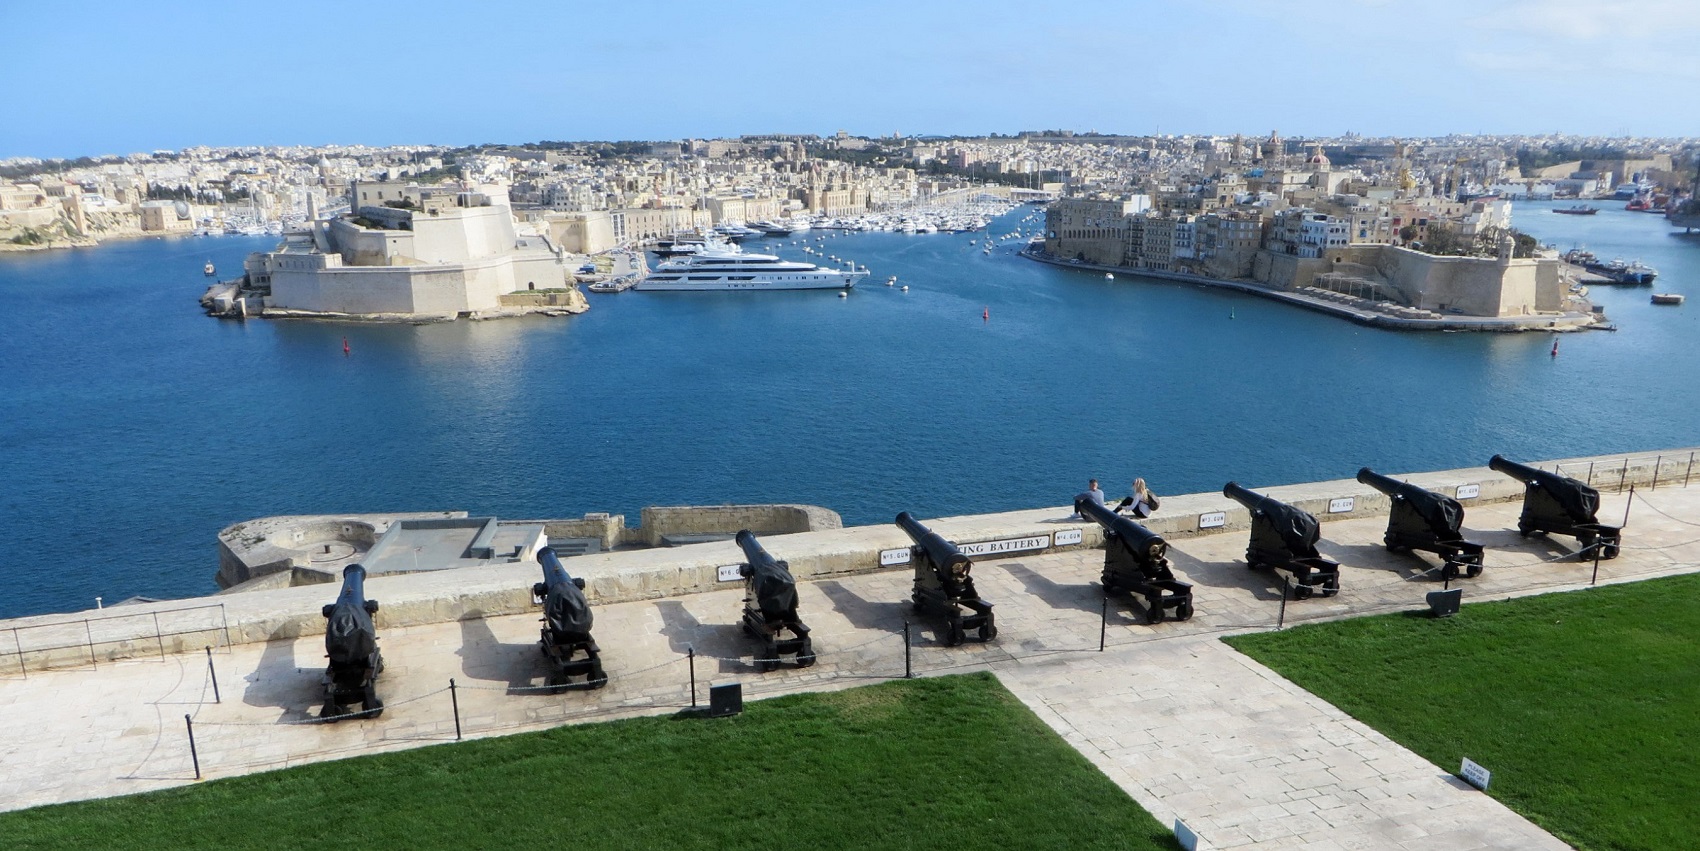 Malta Valletta Landmarks & Neighborhoods